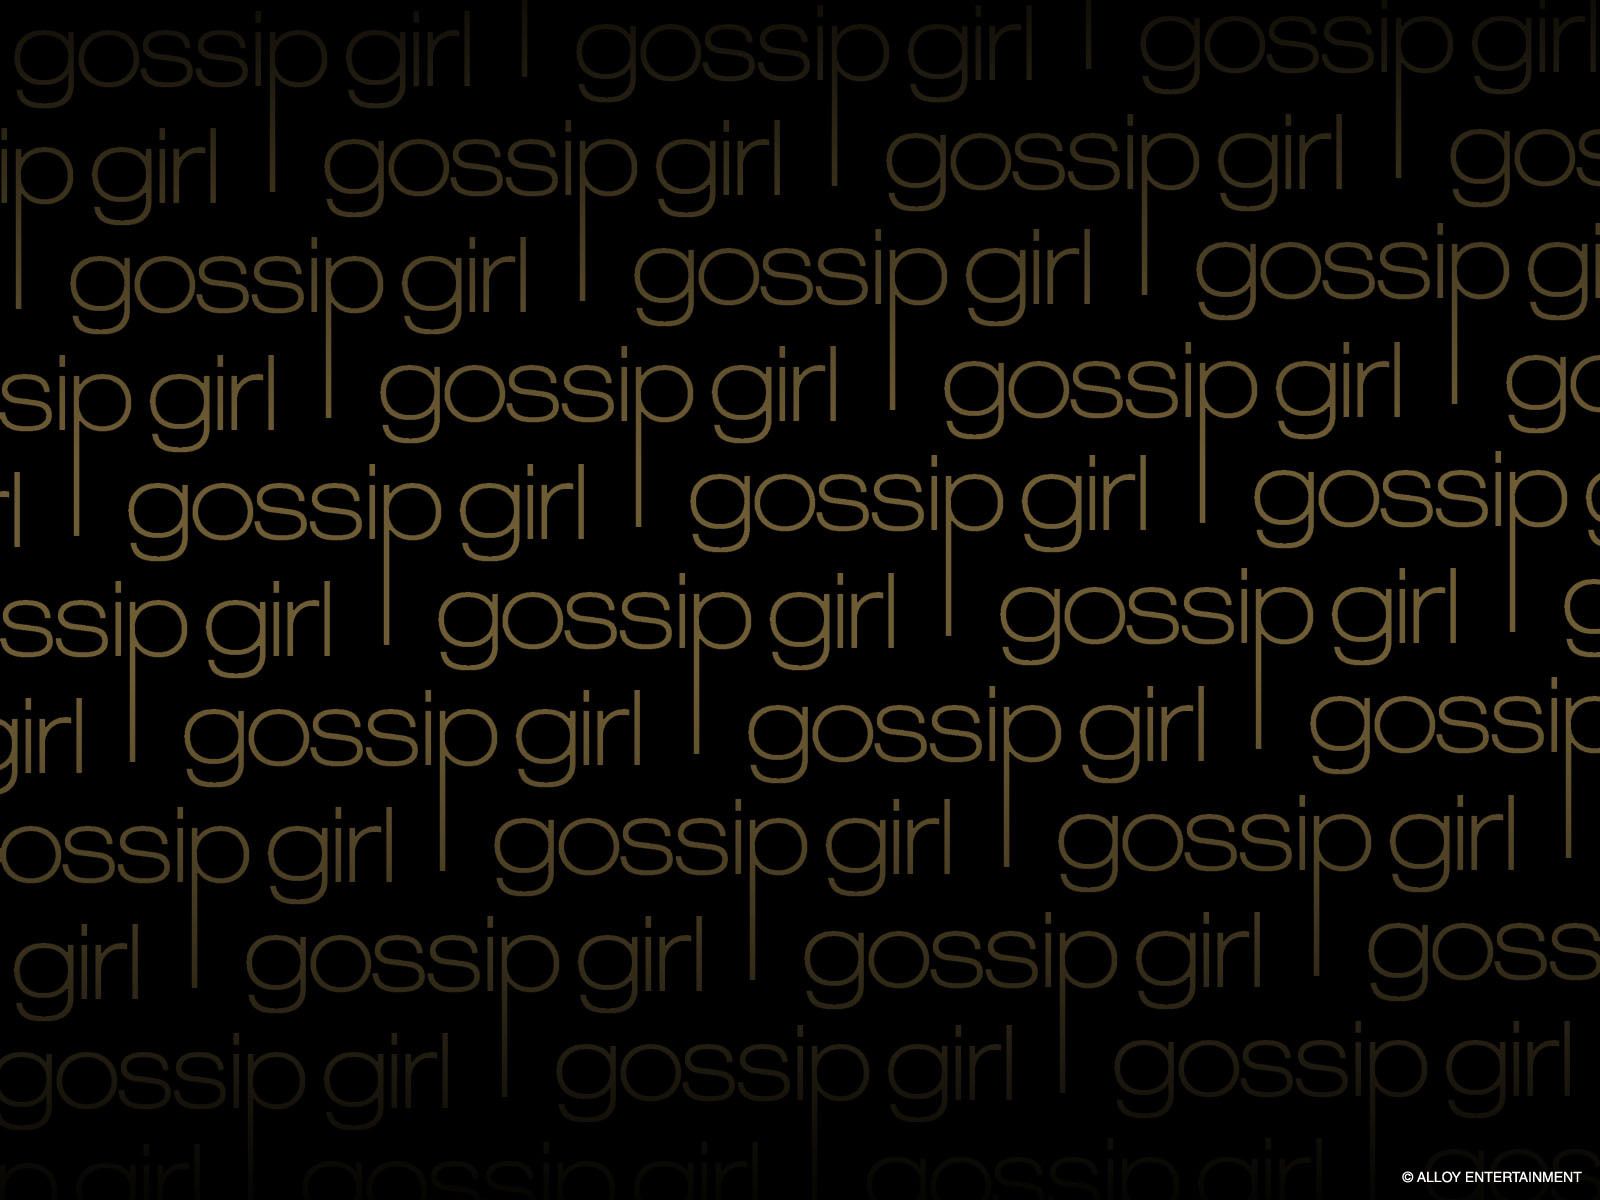 Gossip Girl Books Wallpaper - Gossip Girl Book Series Wallpaper ...